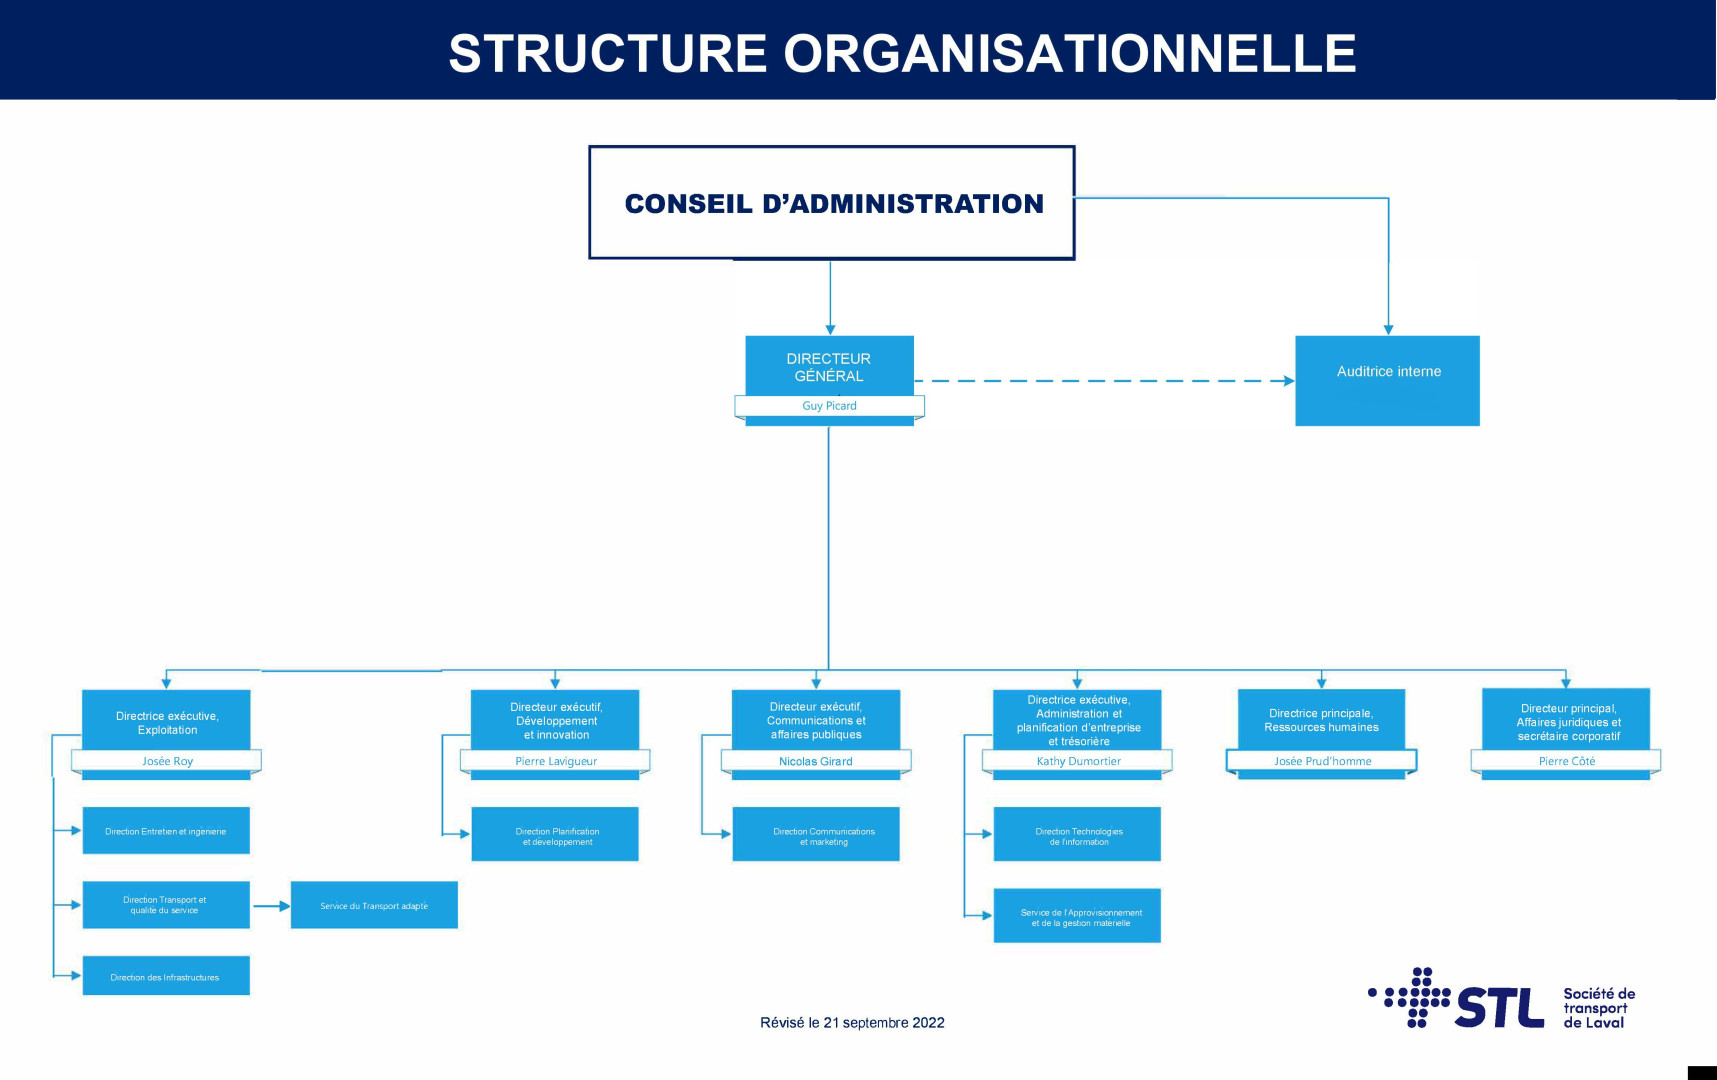 Structure organisationnelle de la STL (21 septembre 2022)